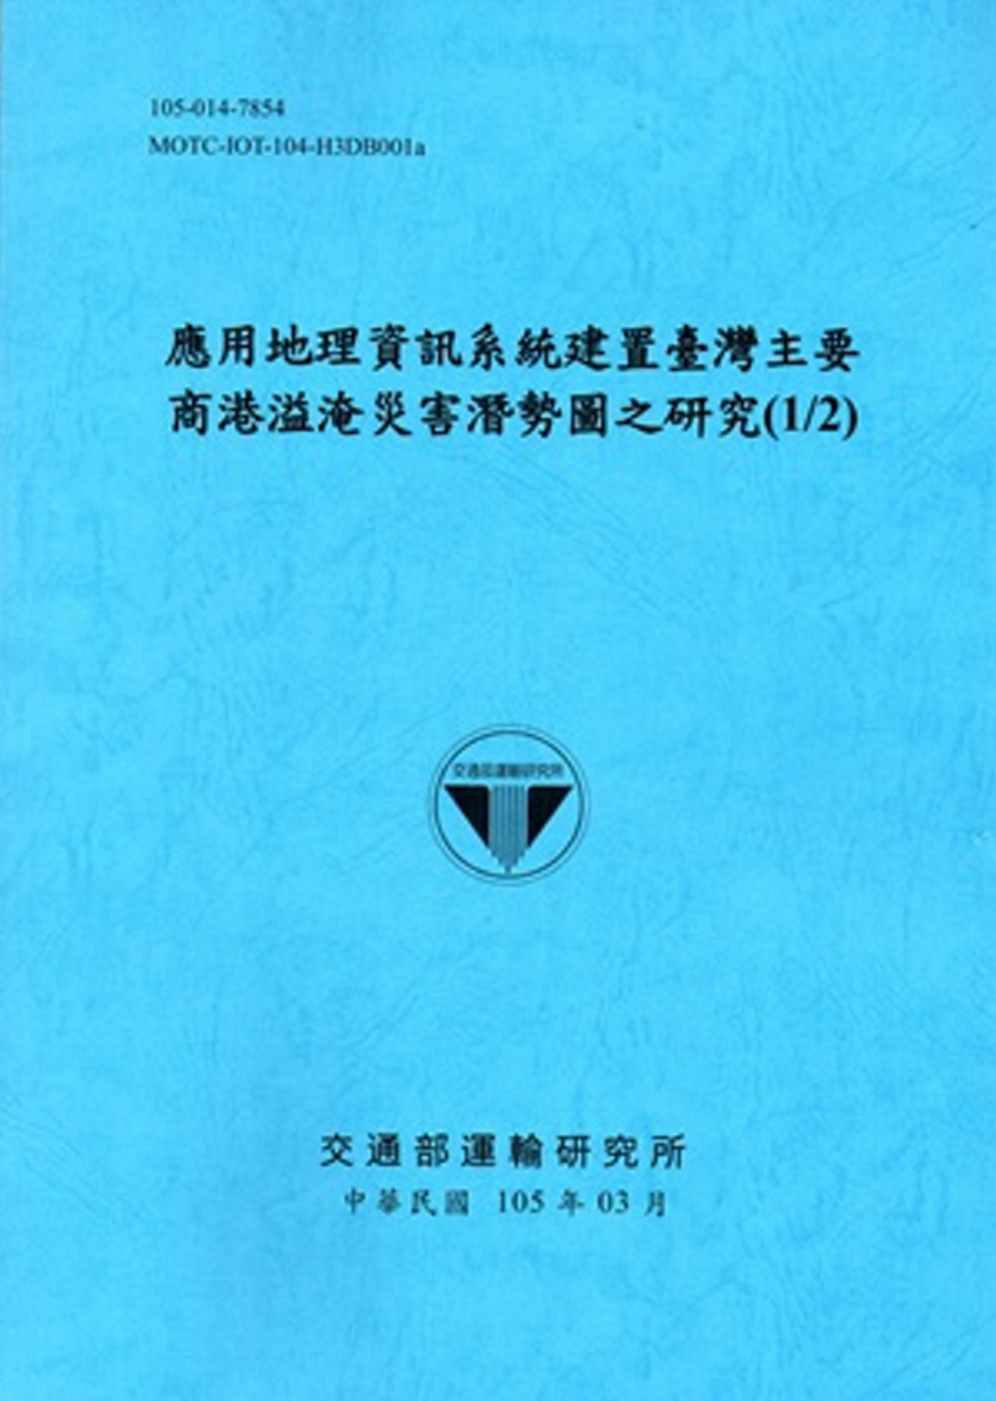 應用地理資訊系統建置臺灣主要商港溢淹災害潛勢圖之研究(1/2)[105藍]